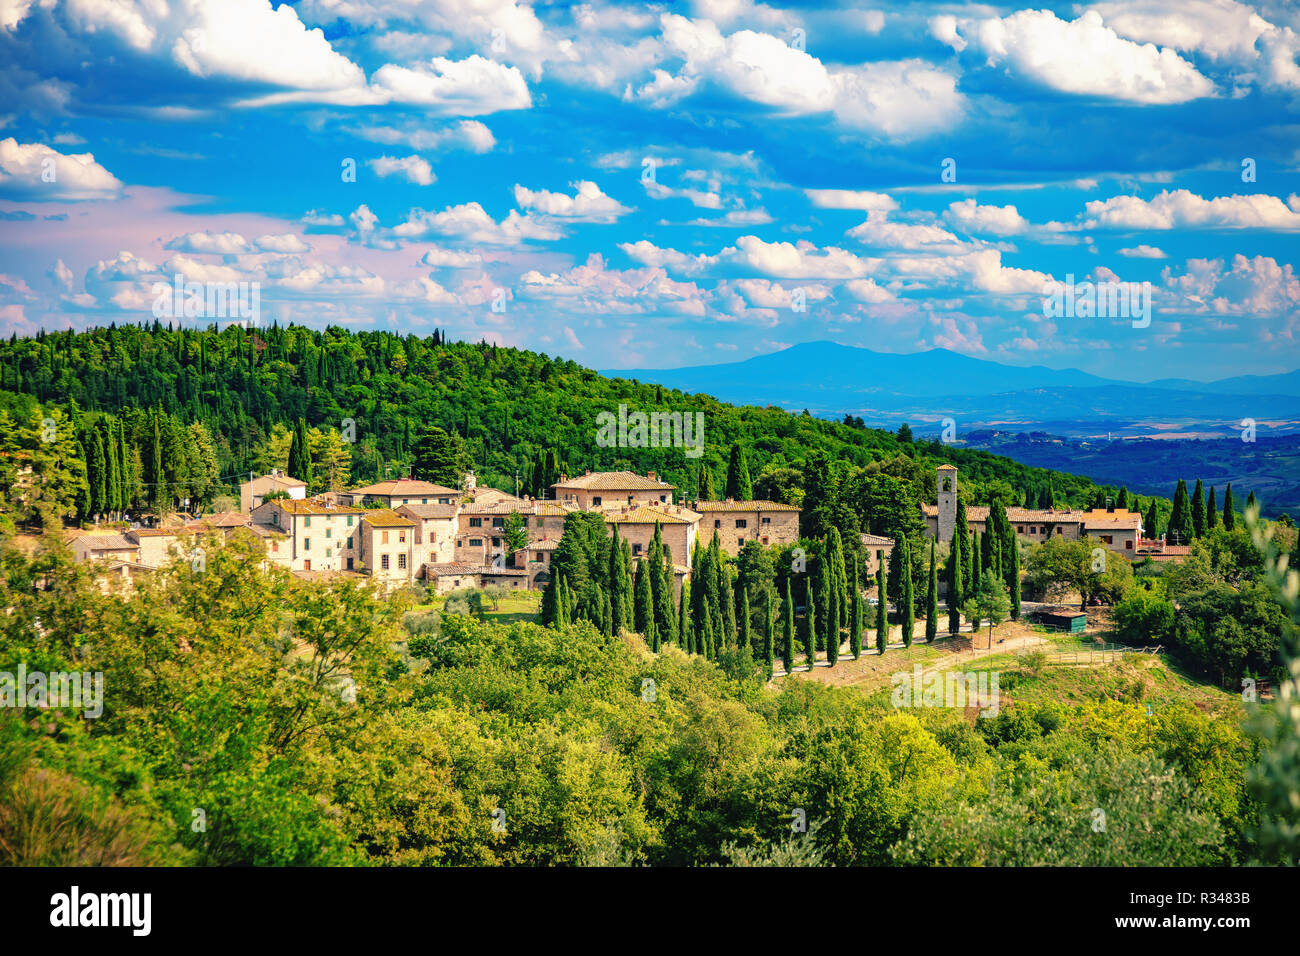 Blick auf das malerische Dorf Fonterutoli, Provinz Siena, Toskana, Italien, umgeben von Weinbergen, Olivenhainen und Zypressen. Stockfoto